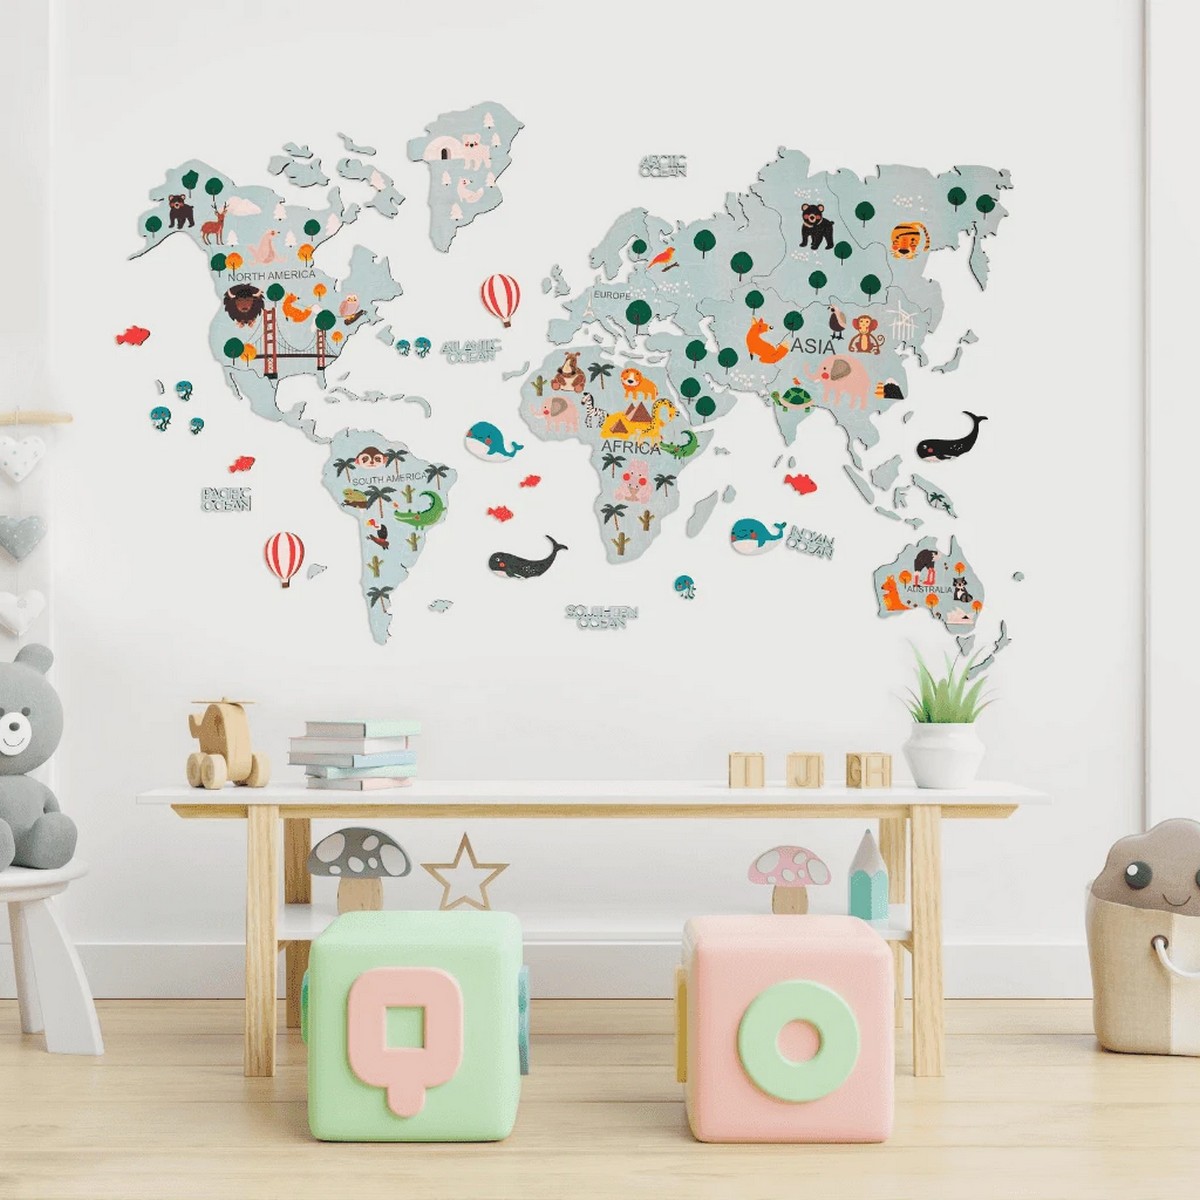 карта мира детей на стене